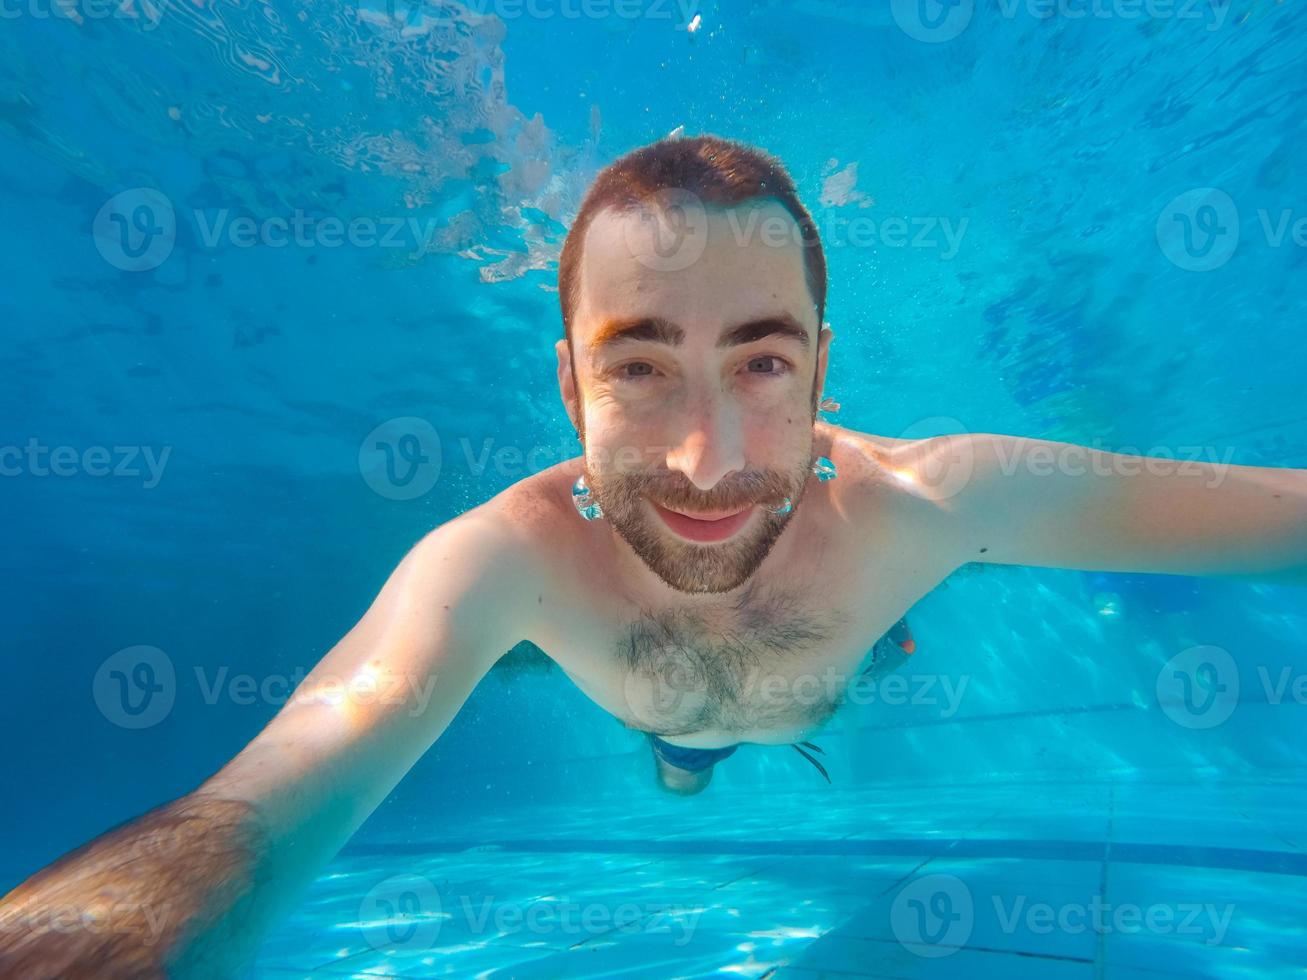 jovem bonito mergulhando debaixo d'água em uma piscina foto